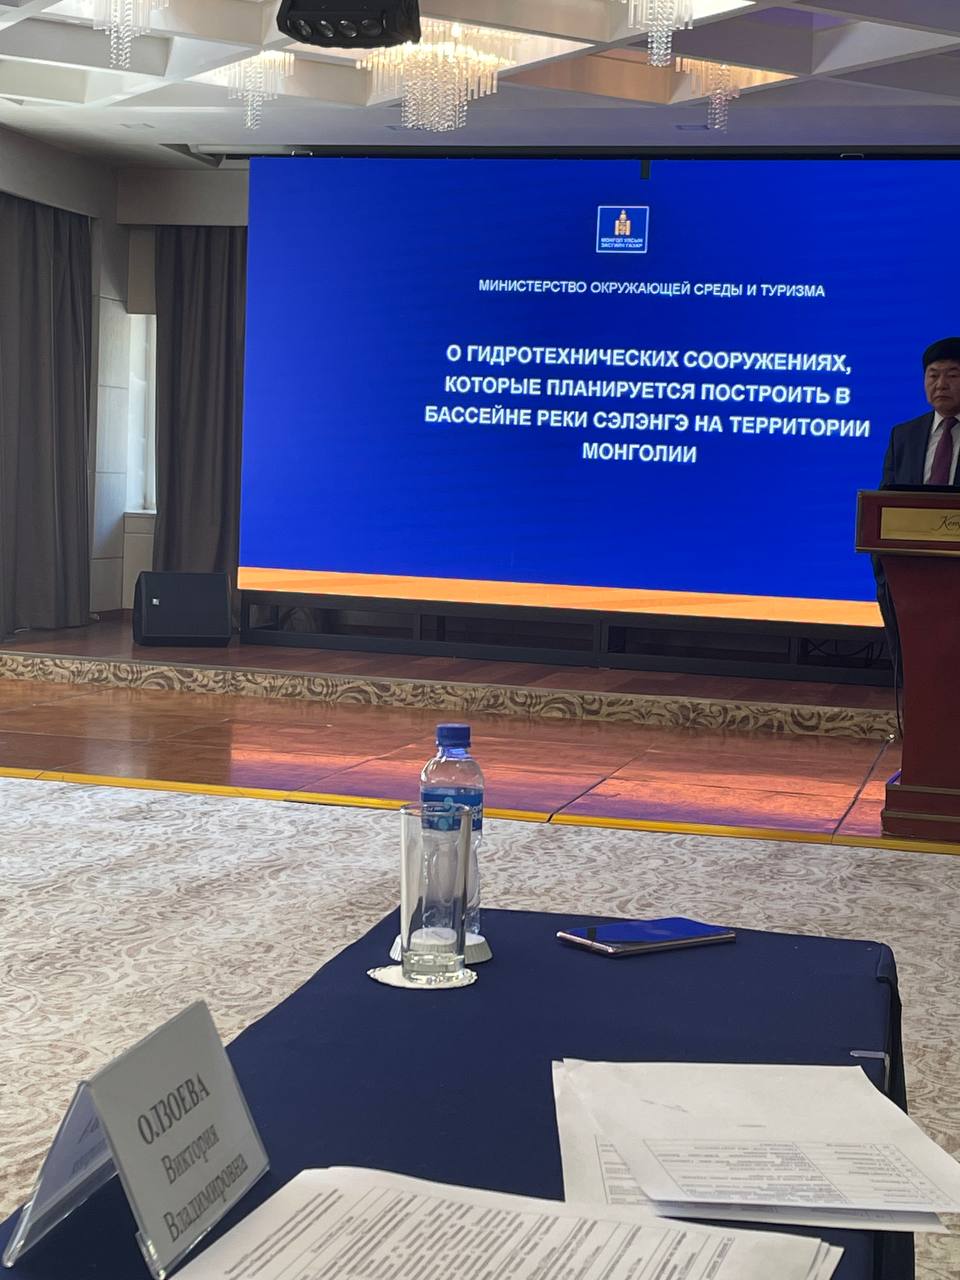 XVI Совещание Уполномоченных Правительства РФ и Правительства Монголии по выполнению Соглашения по охране и использованию трансграничных вод.